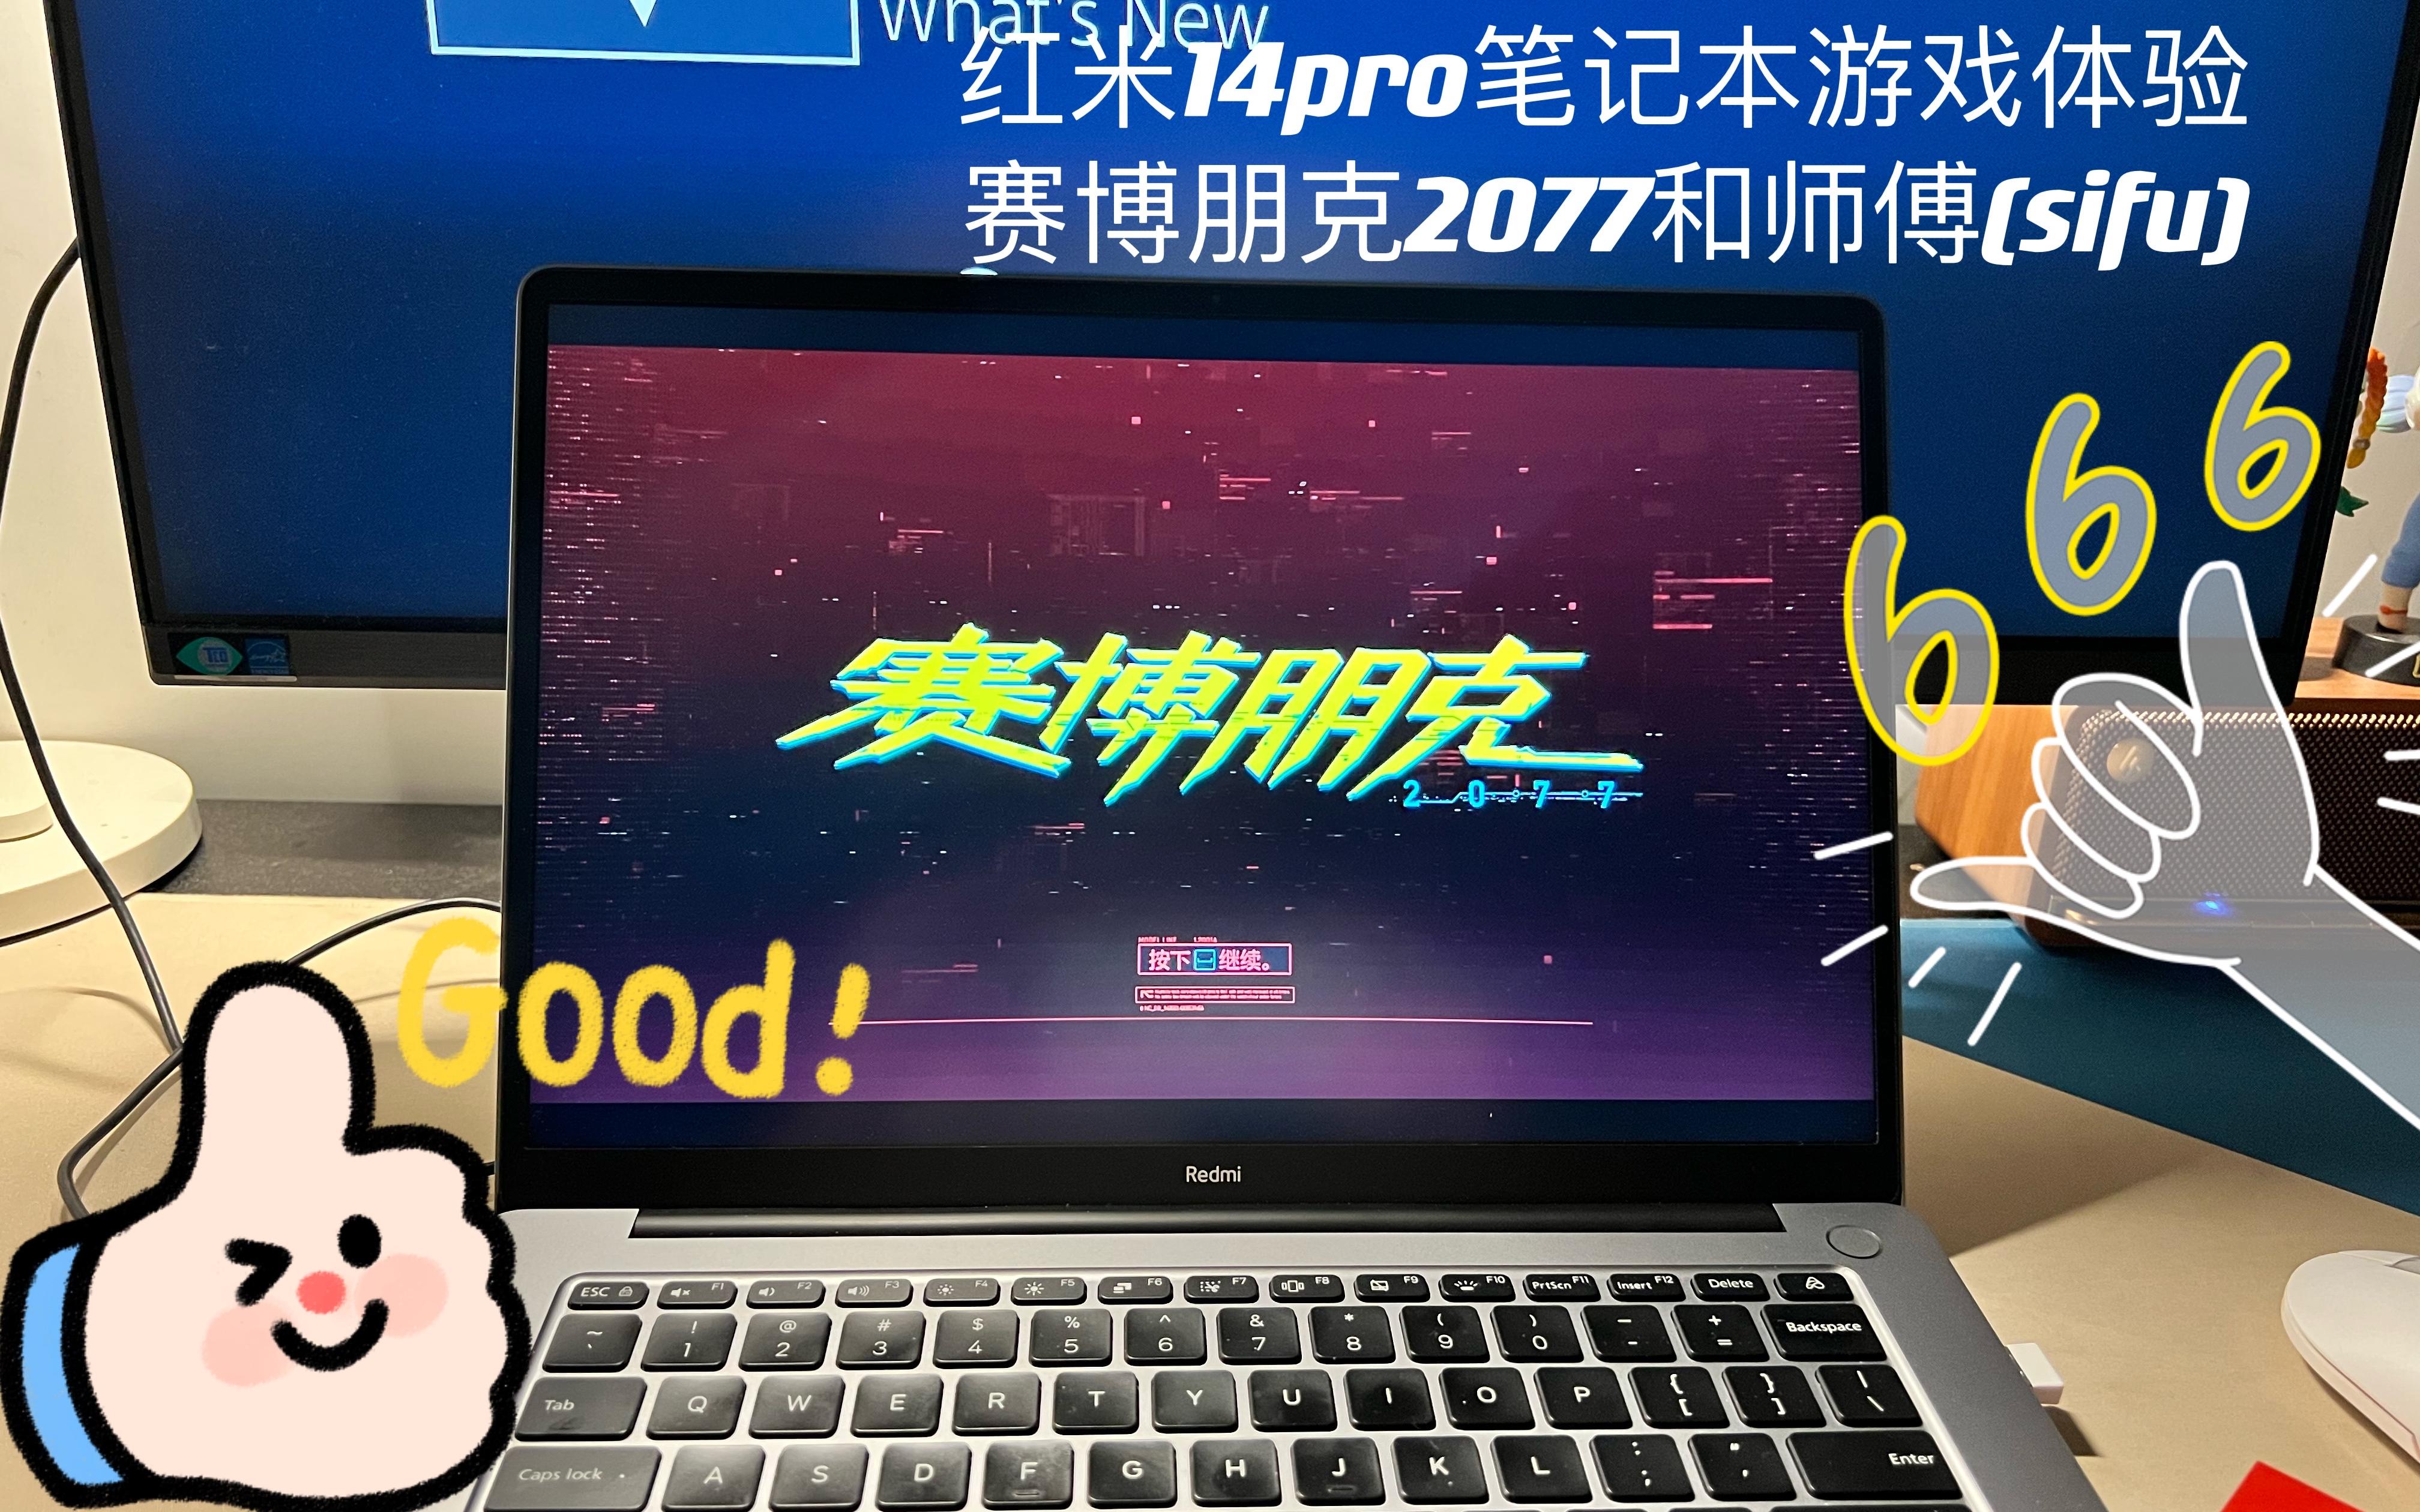 2021款Redmi红米笔记本Pro14办公笔记本锐龙版竟然能玩赛博朋克2077和师傅（sifu）？？？